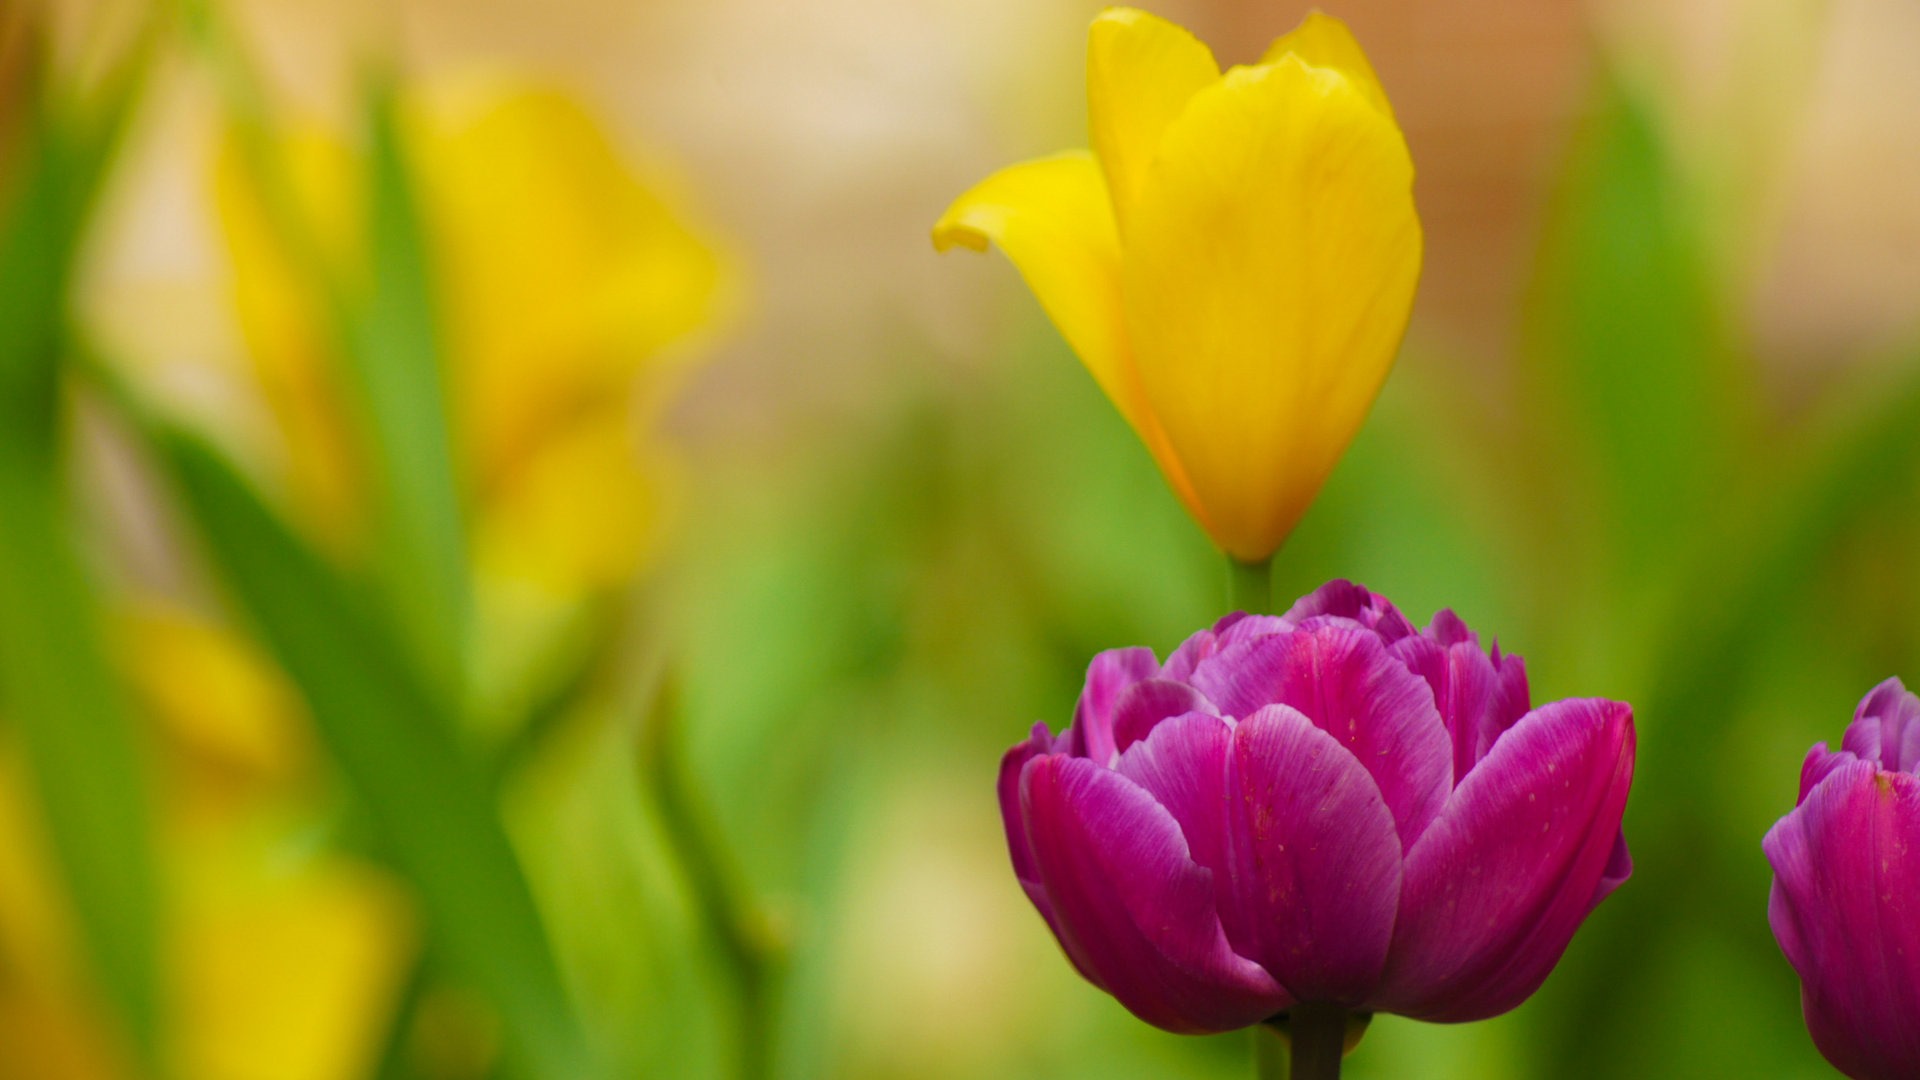 Fondos de pantalla HD de flores tulipanes frescos y coloridos #15 - 1920x1080